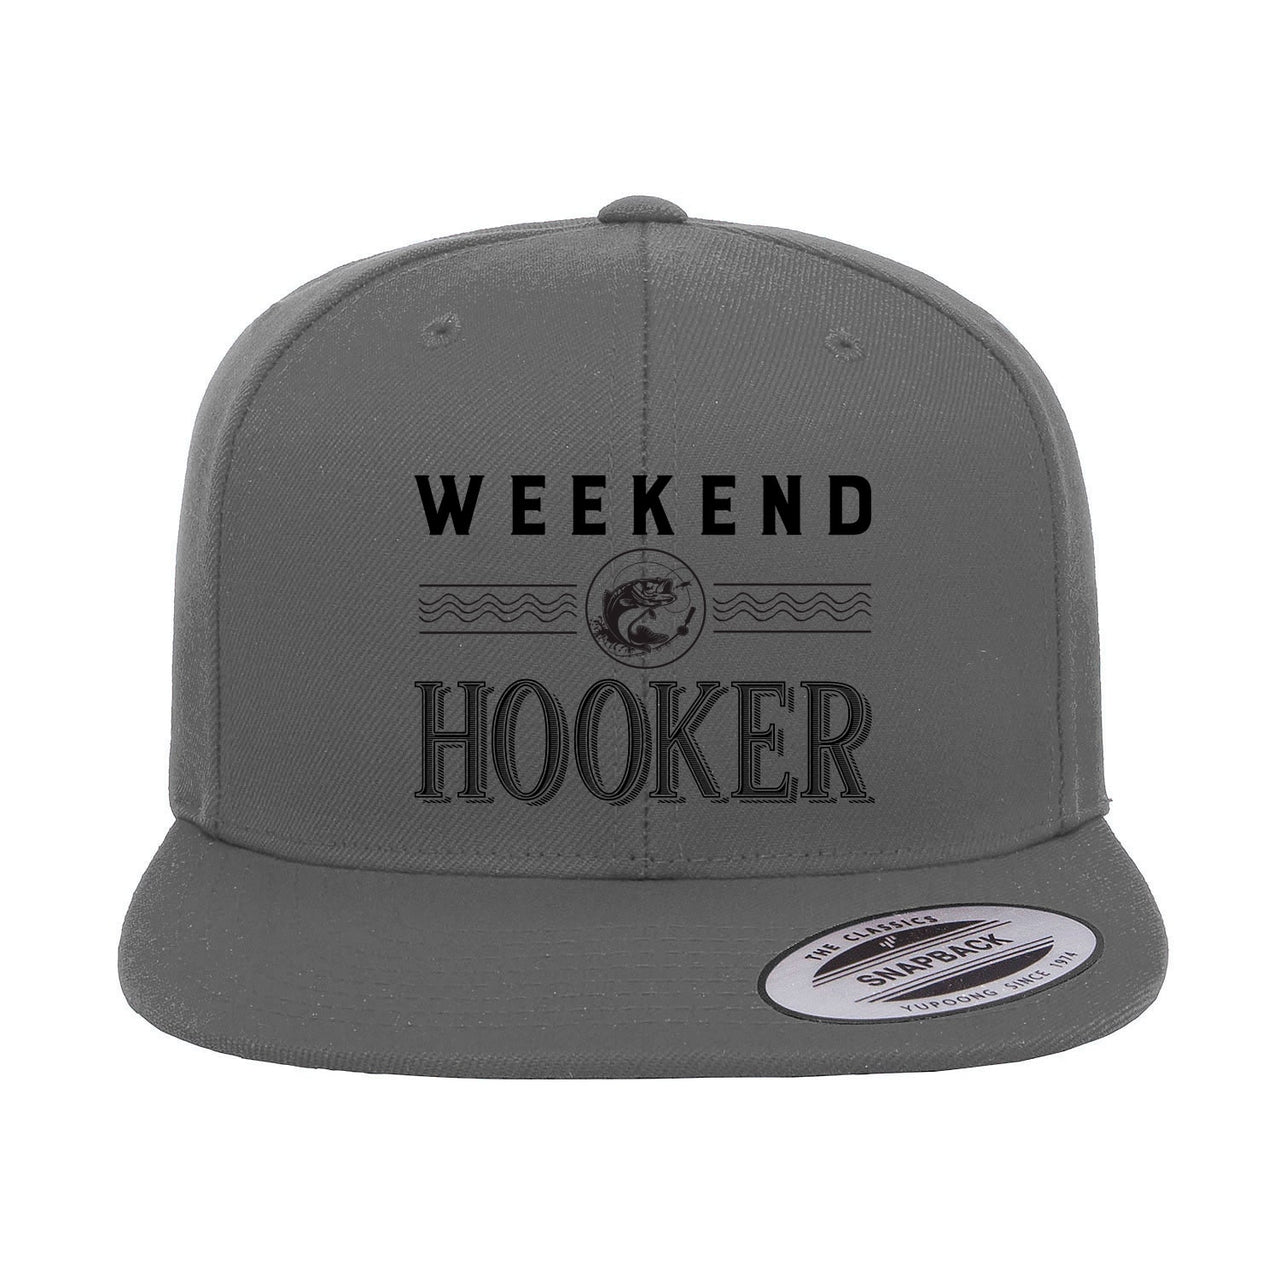 Weekend Hooker Embroidered Flat Bill Cap